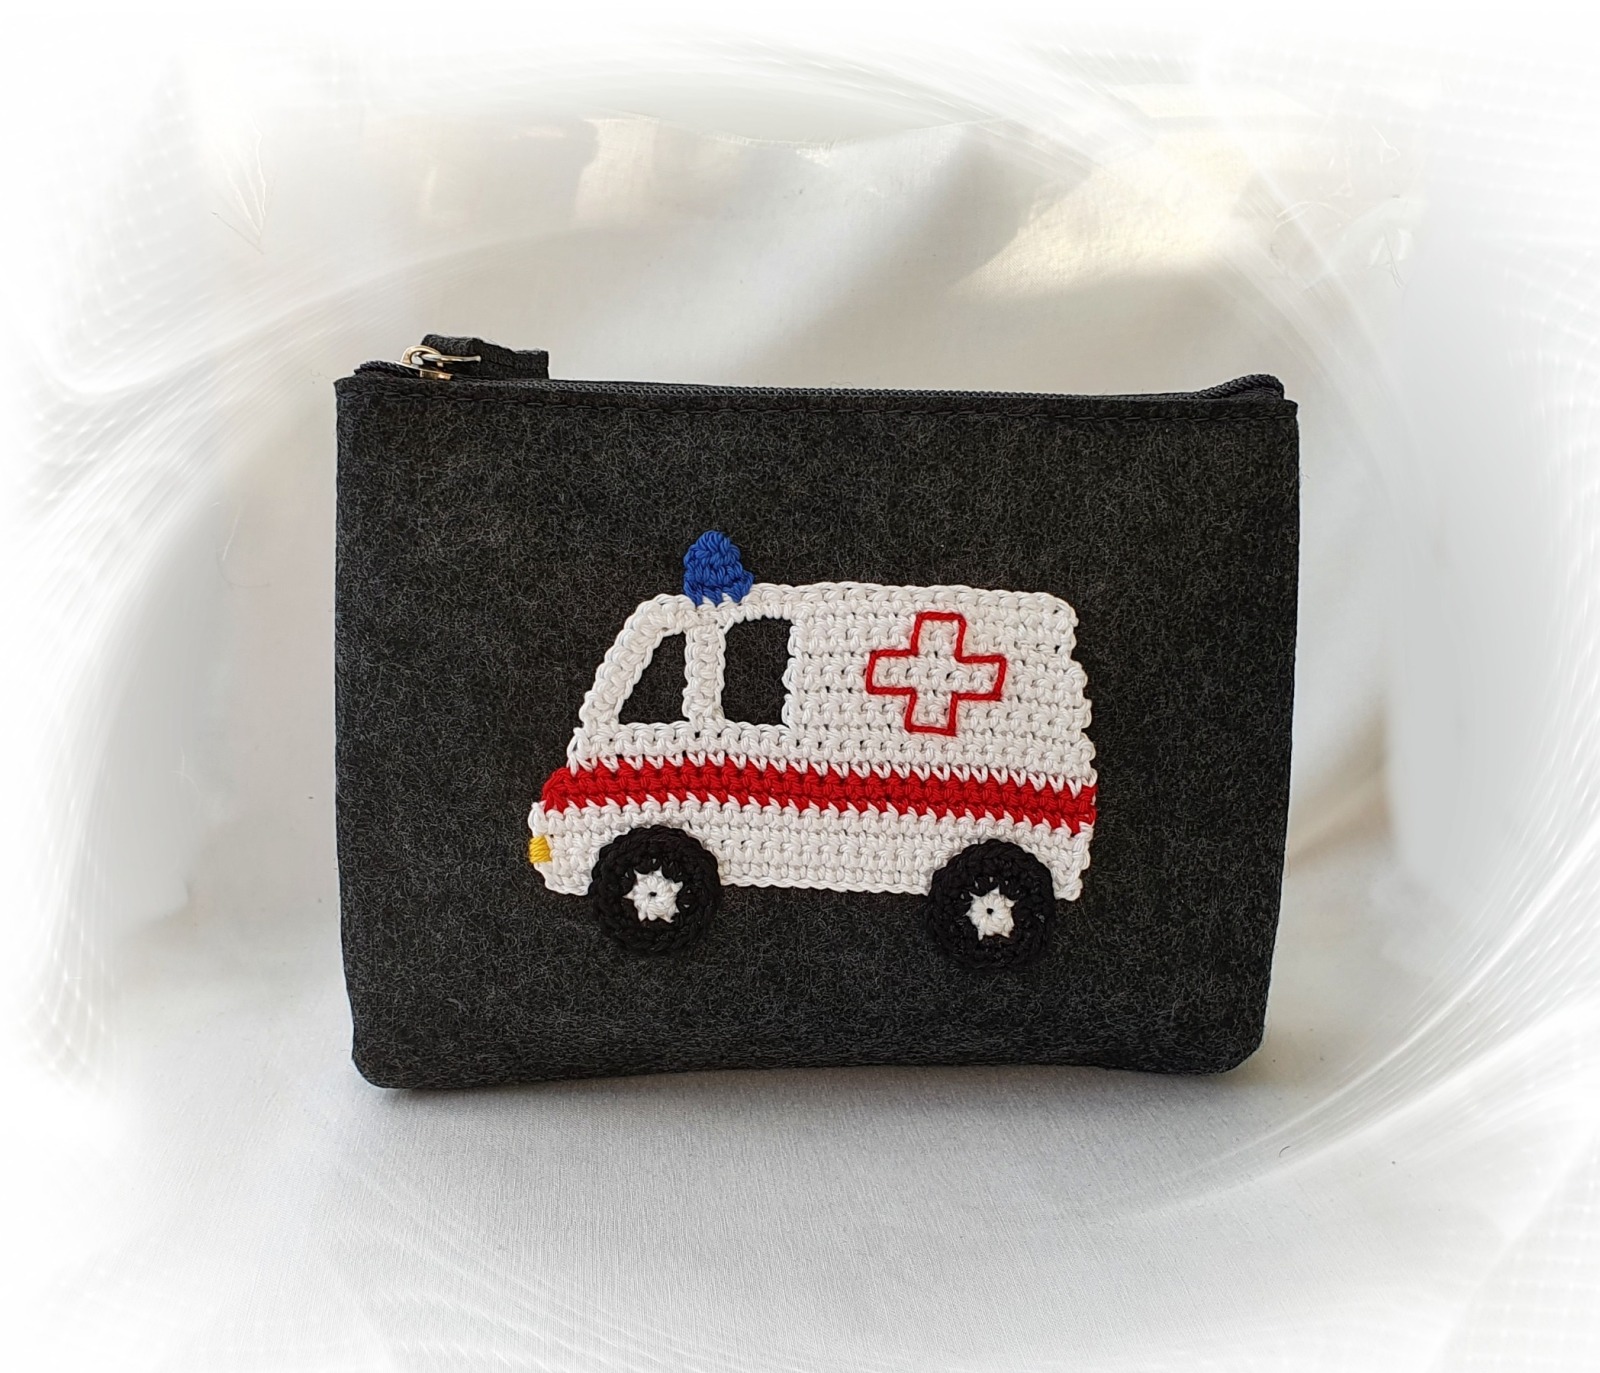 Erste Hilfe Tasche mit Krankenwagen Applikation 2